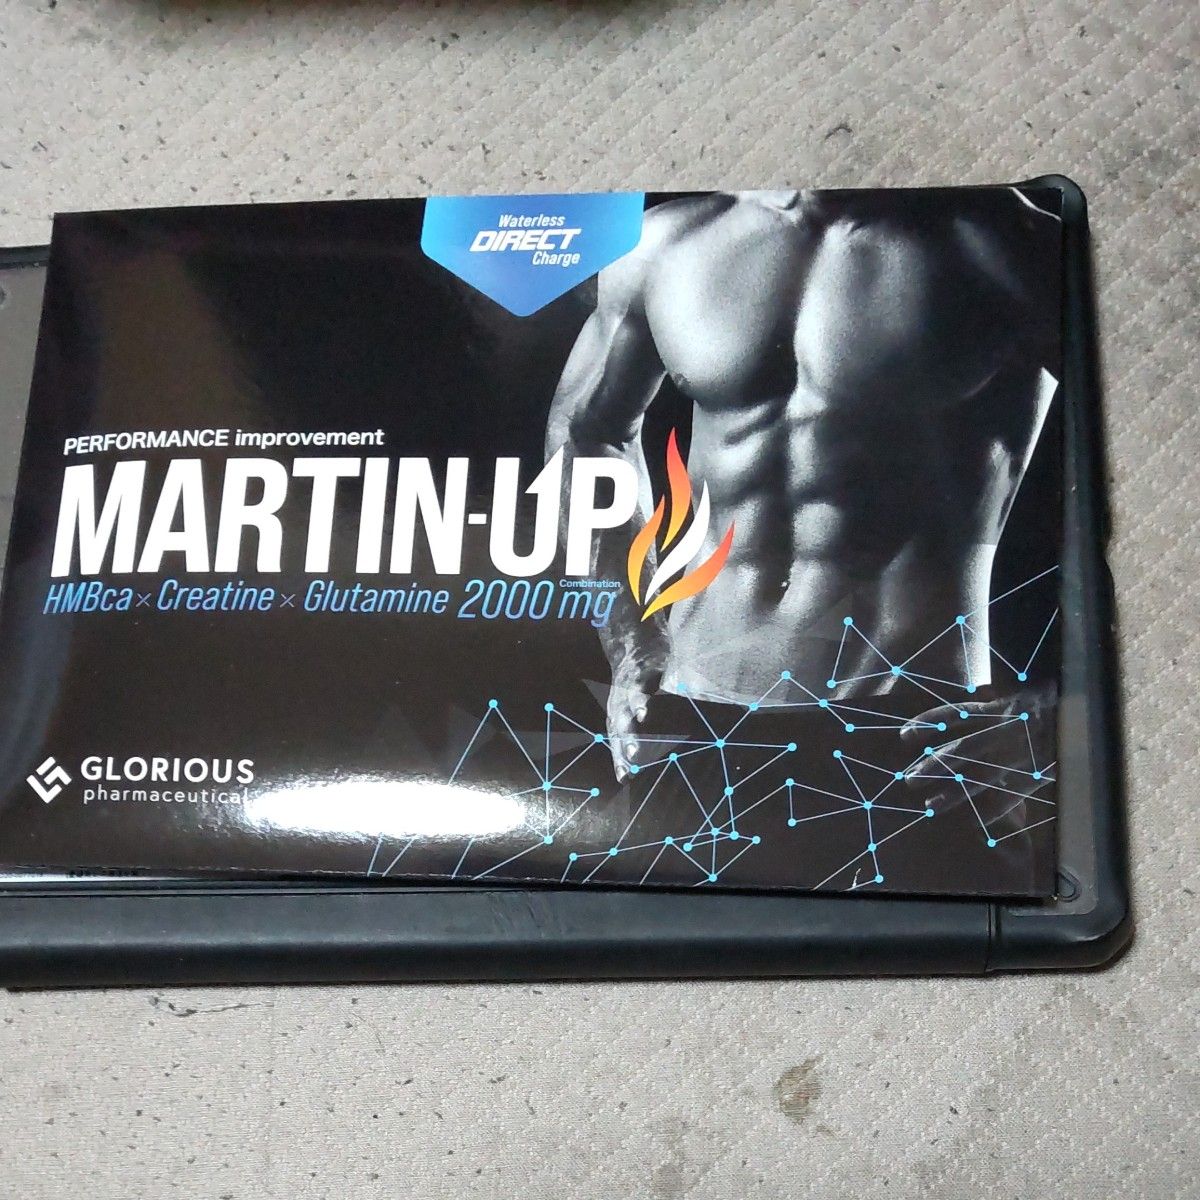 マーチンアップ MARTIN-UP （2.5g×15袋） HMB サプリ クレアチン